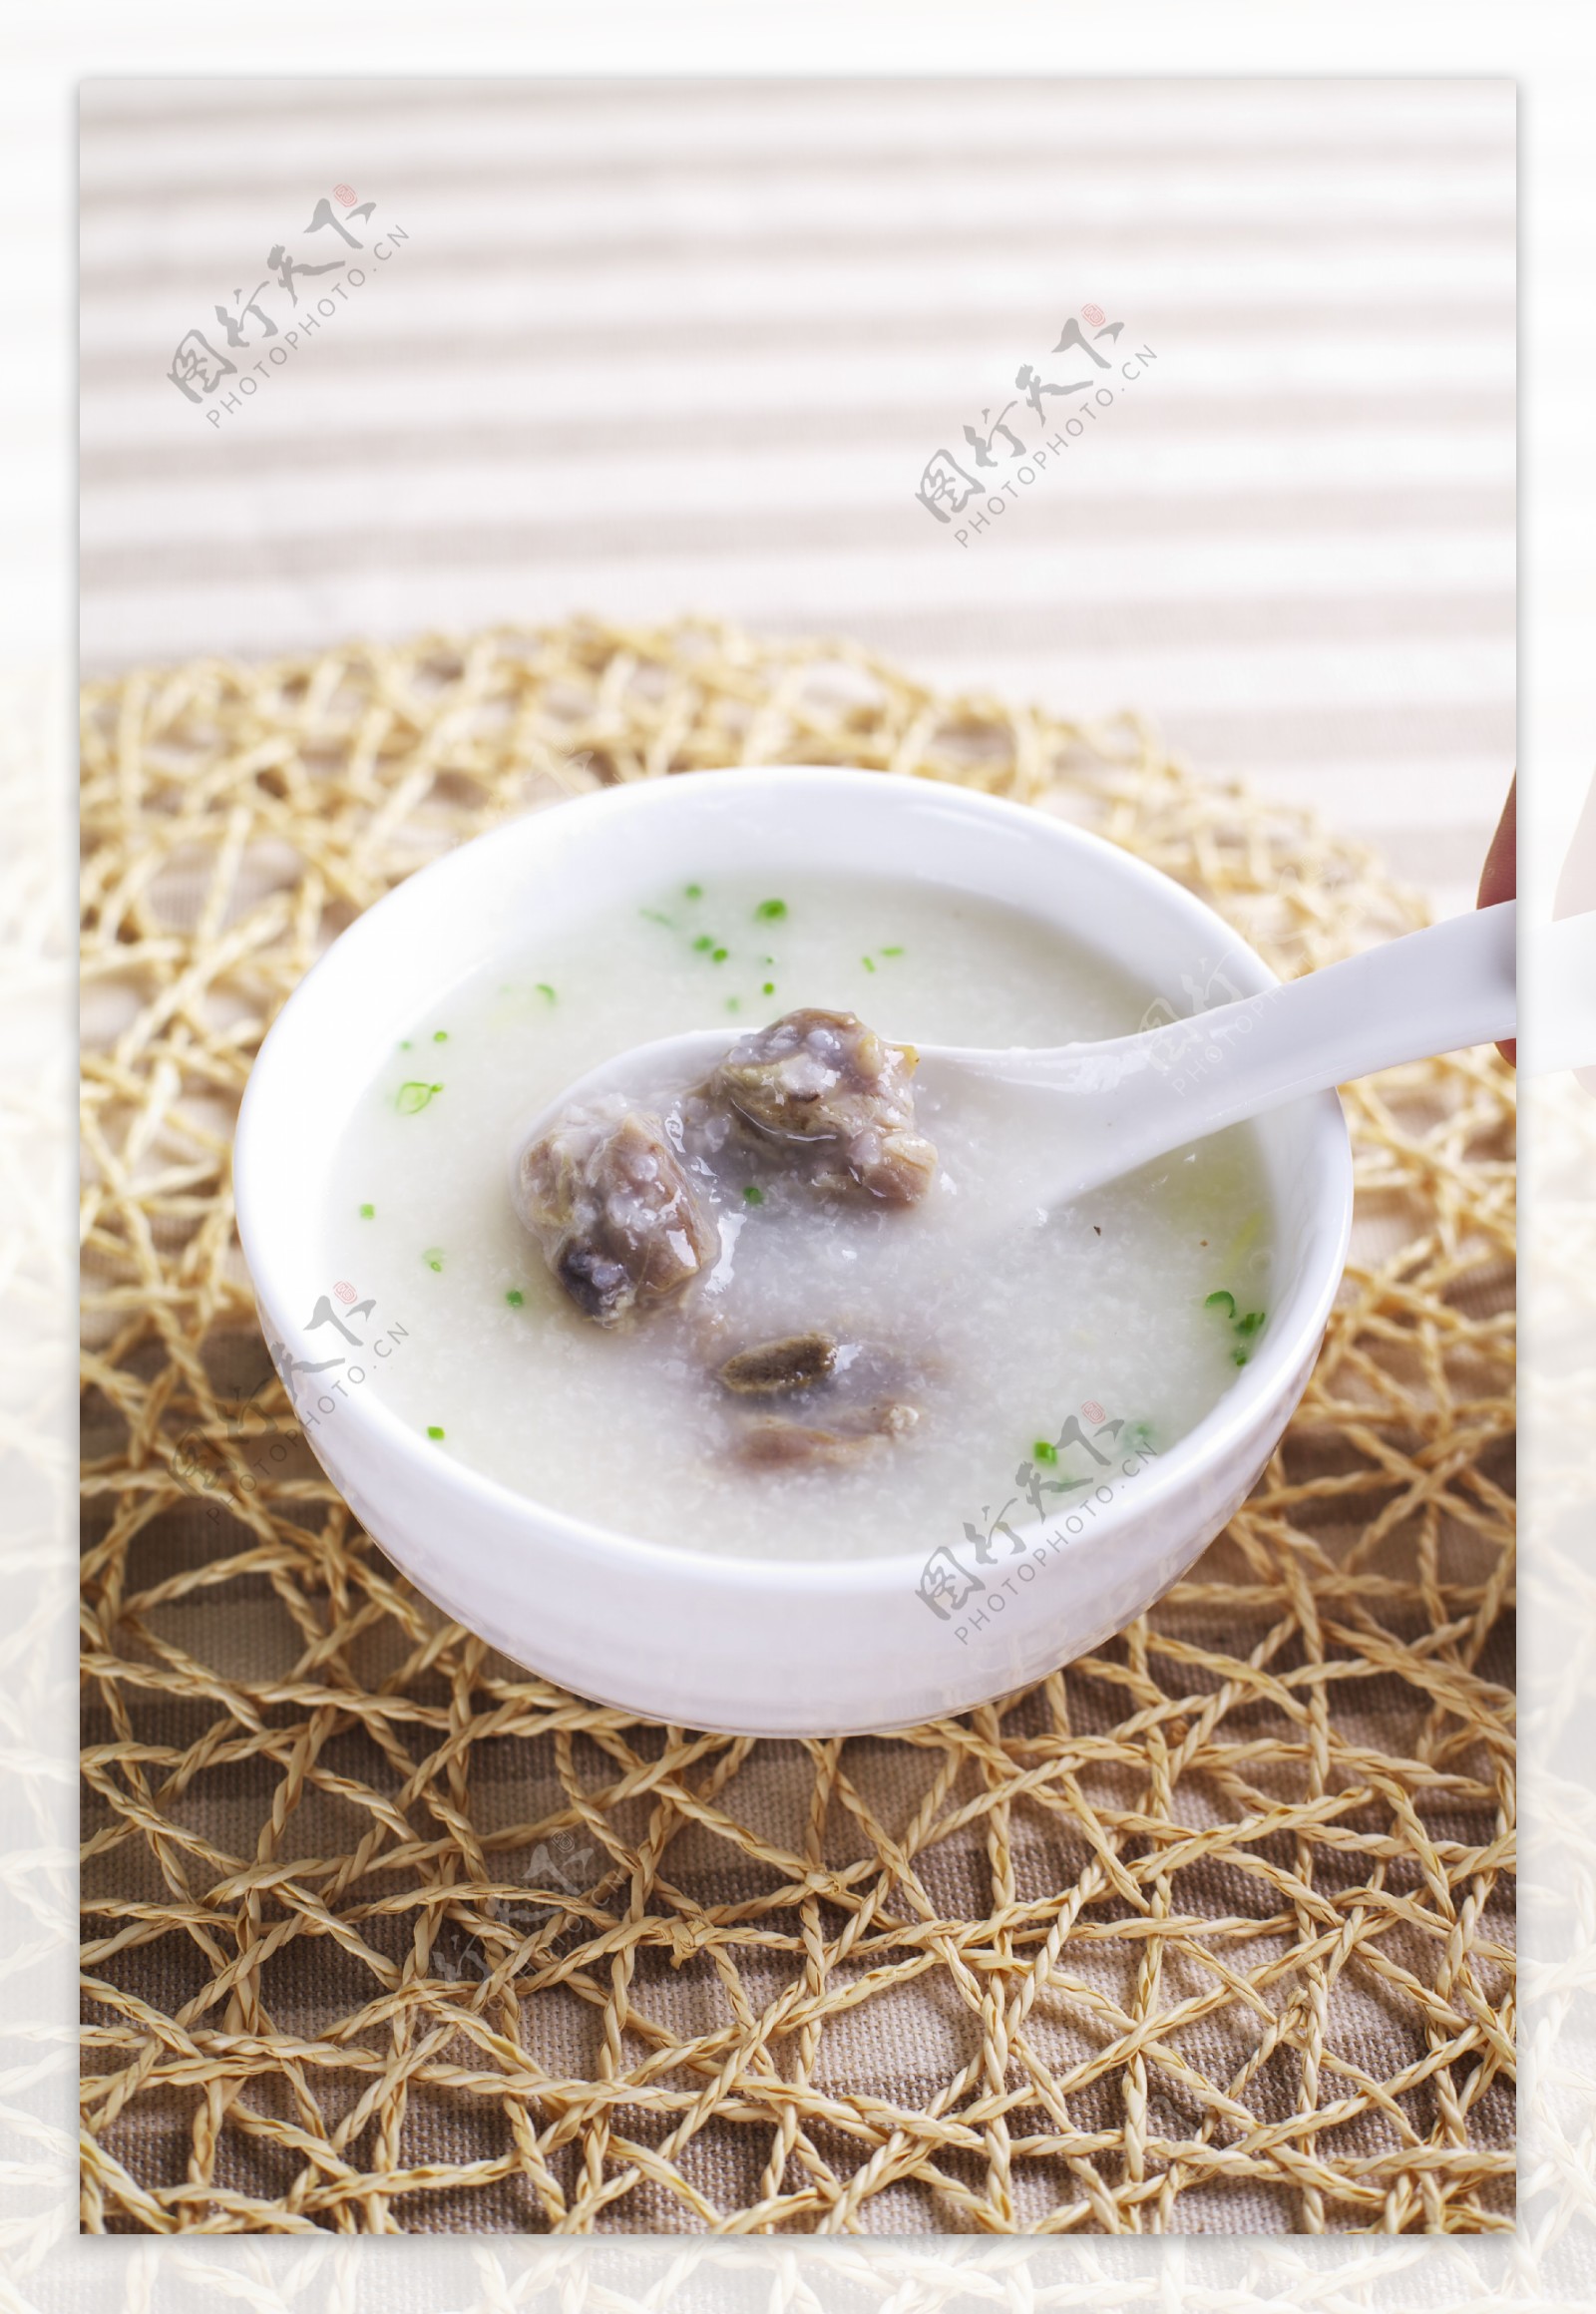 芋頭排骨粥| 美味食譜 | 李錦記台灣 | TAIWAN